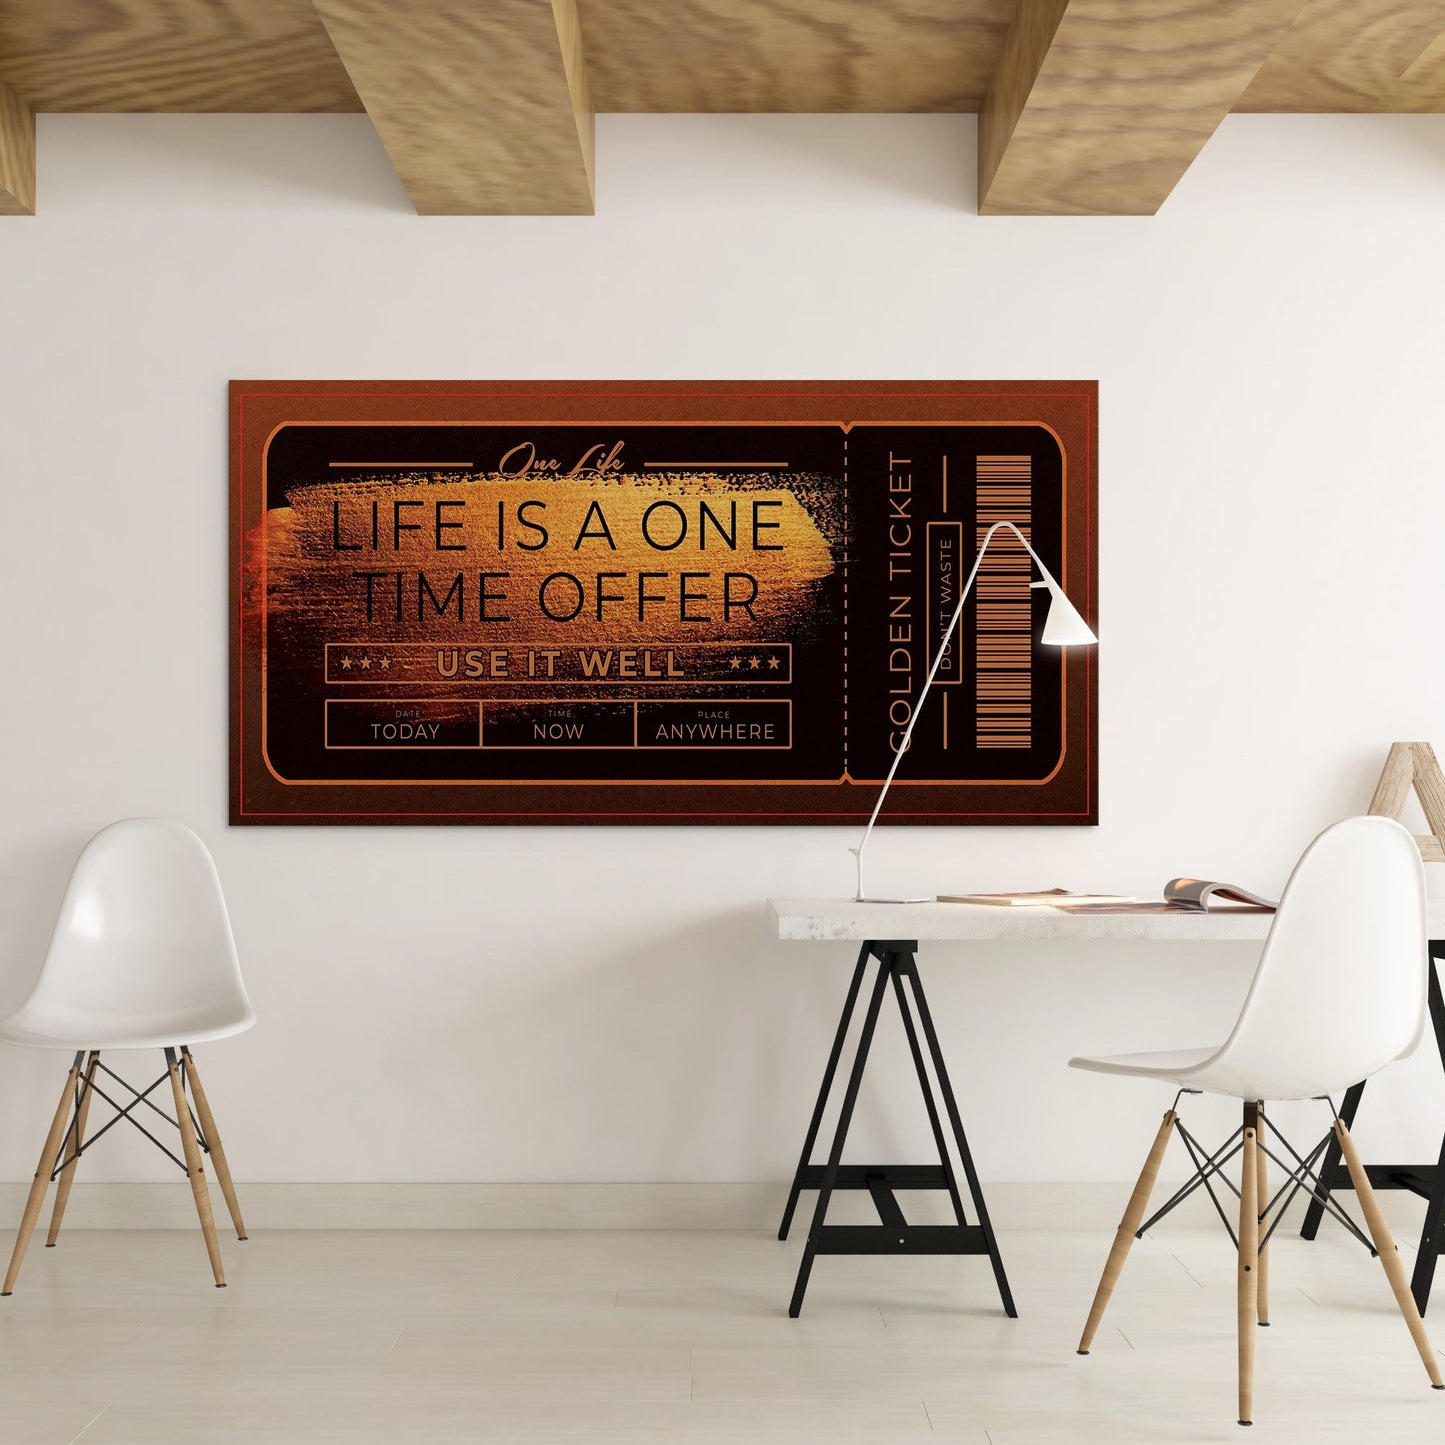 Life Offer Wall Art | Inspirational Wall Art Motivational Wall Art Quotes Office Art | ImpaktMaker Exclusive Canvas Art Landscape